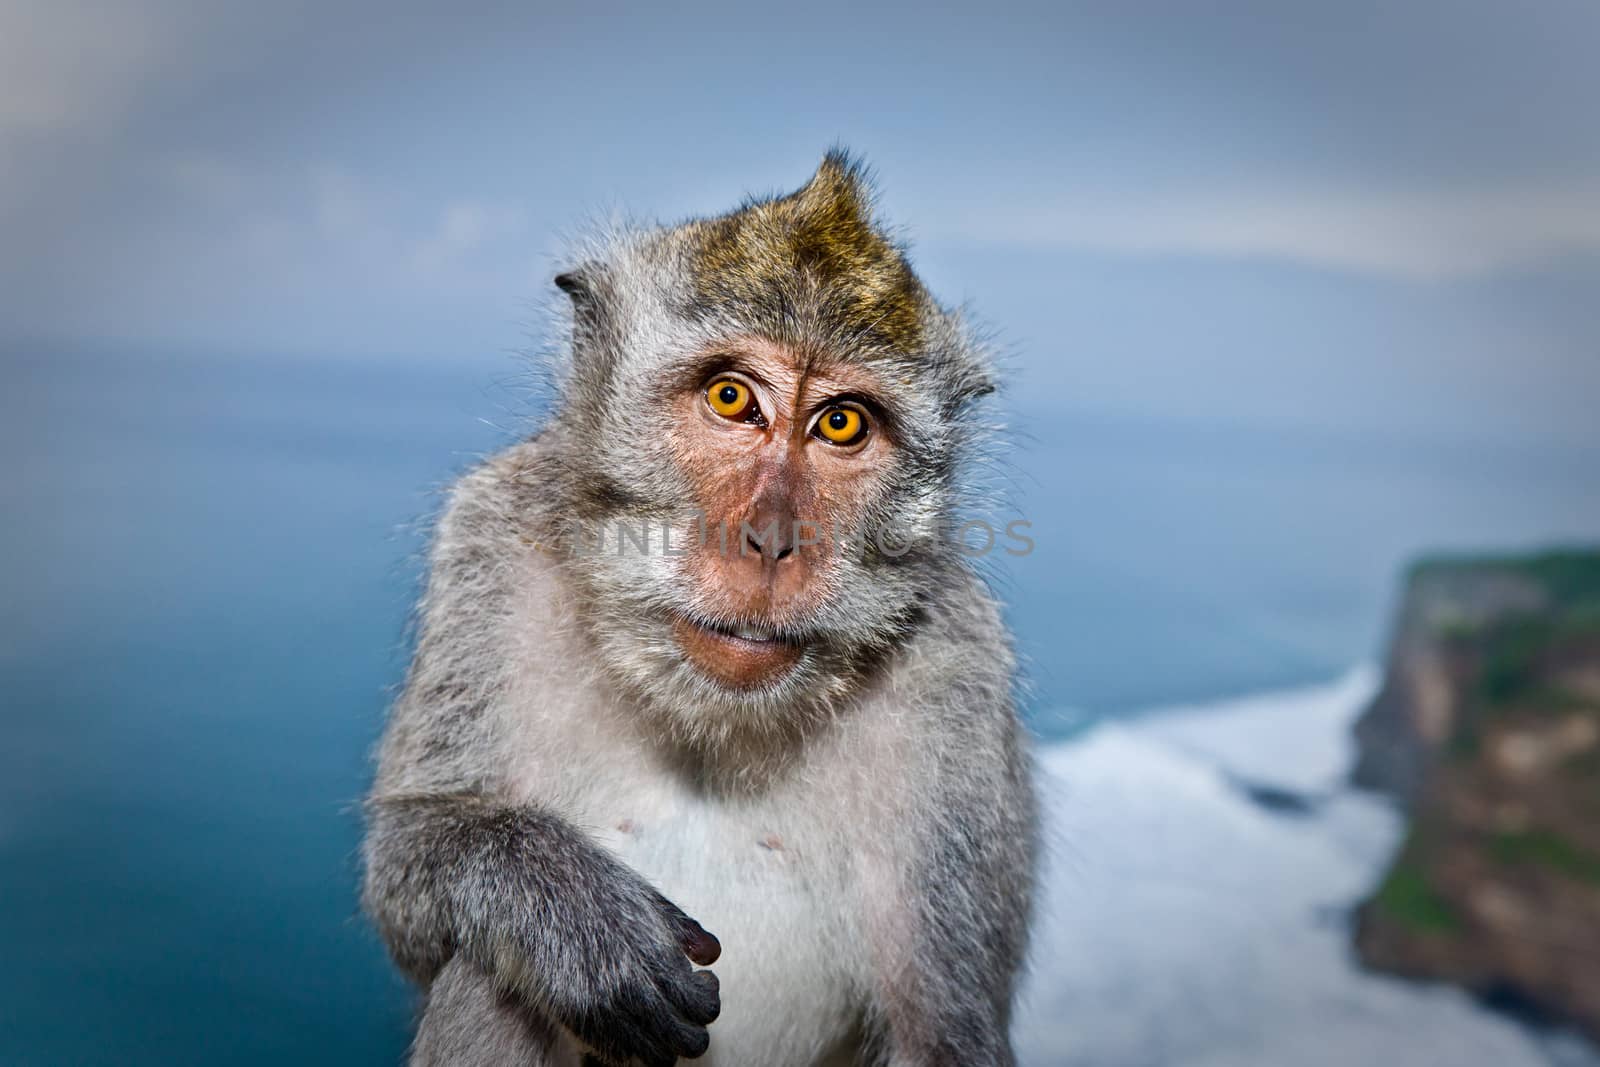 Close-up of a monkey looking at camera